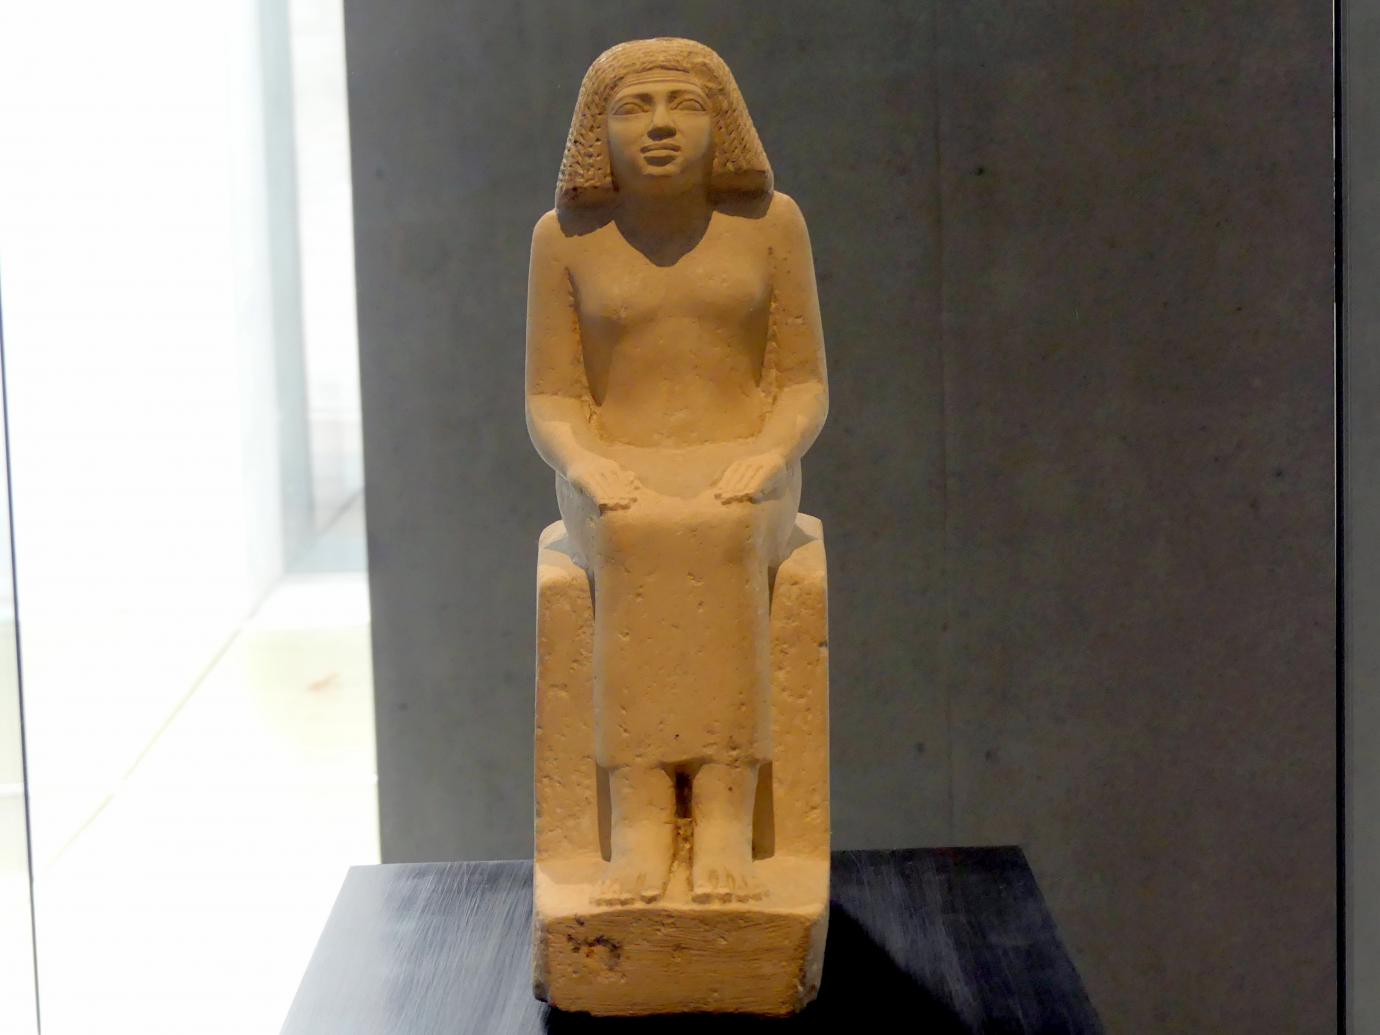 Sitzfigur der Königstochter Nefret-jabet, 4. Dynastie, 2462 - 2353 v. Chr., 2580 v. Chr.